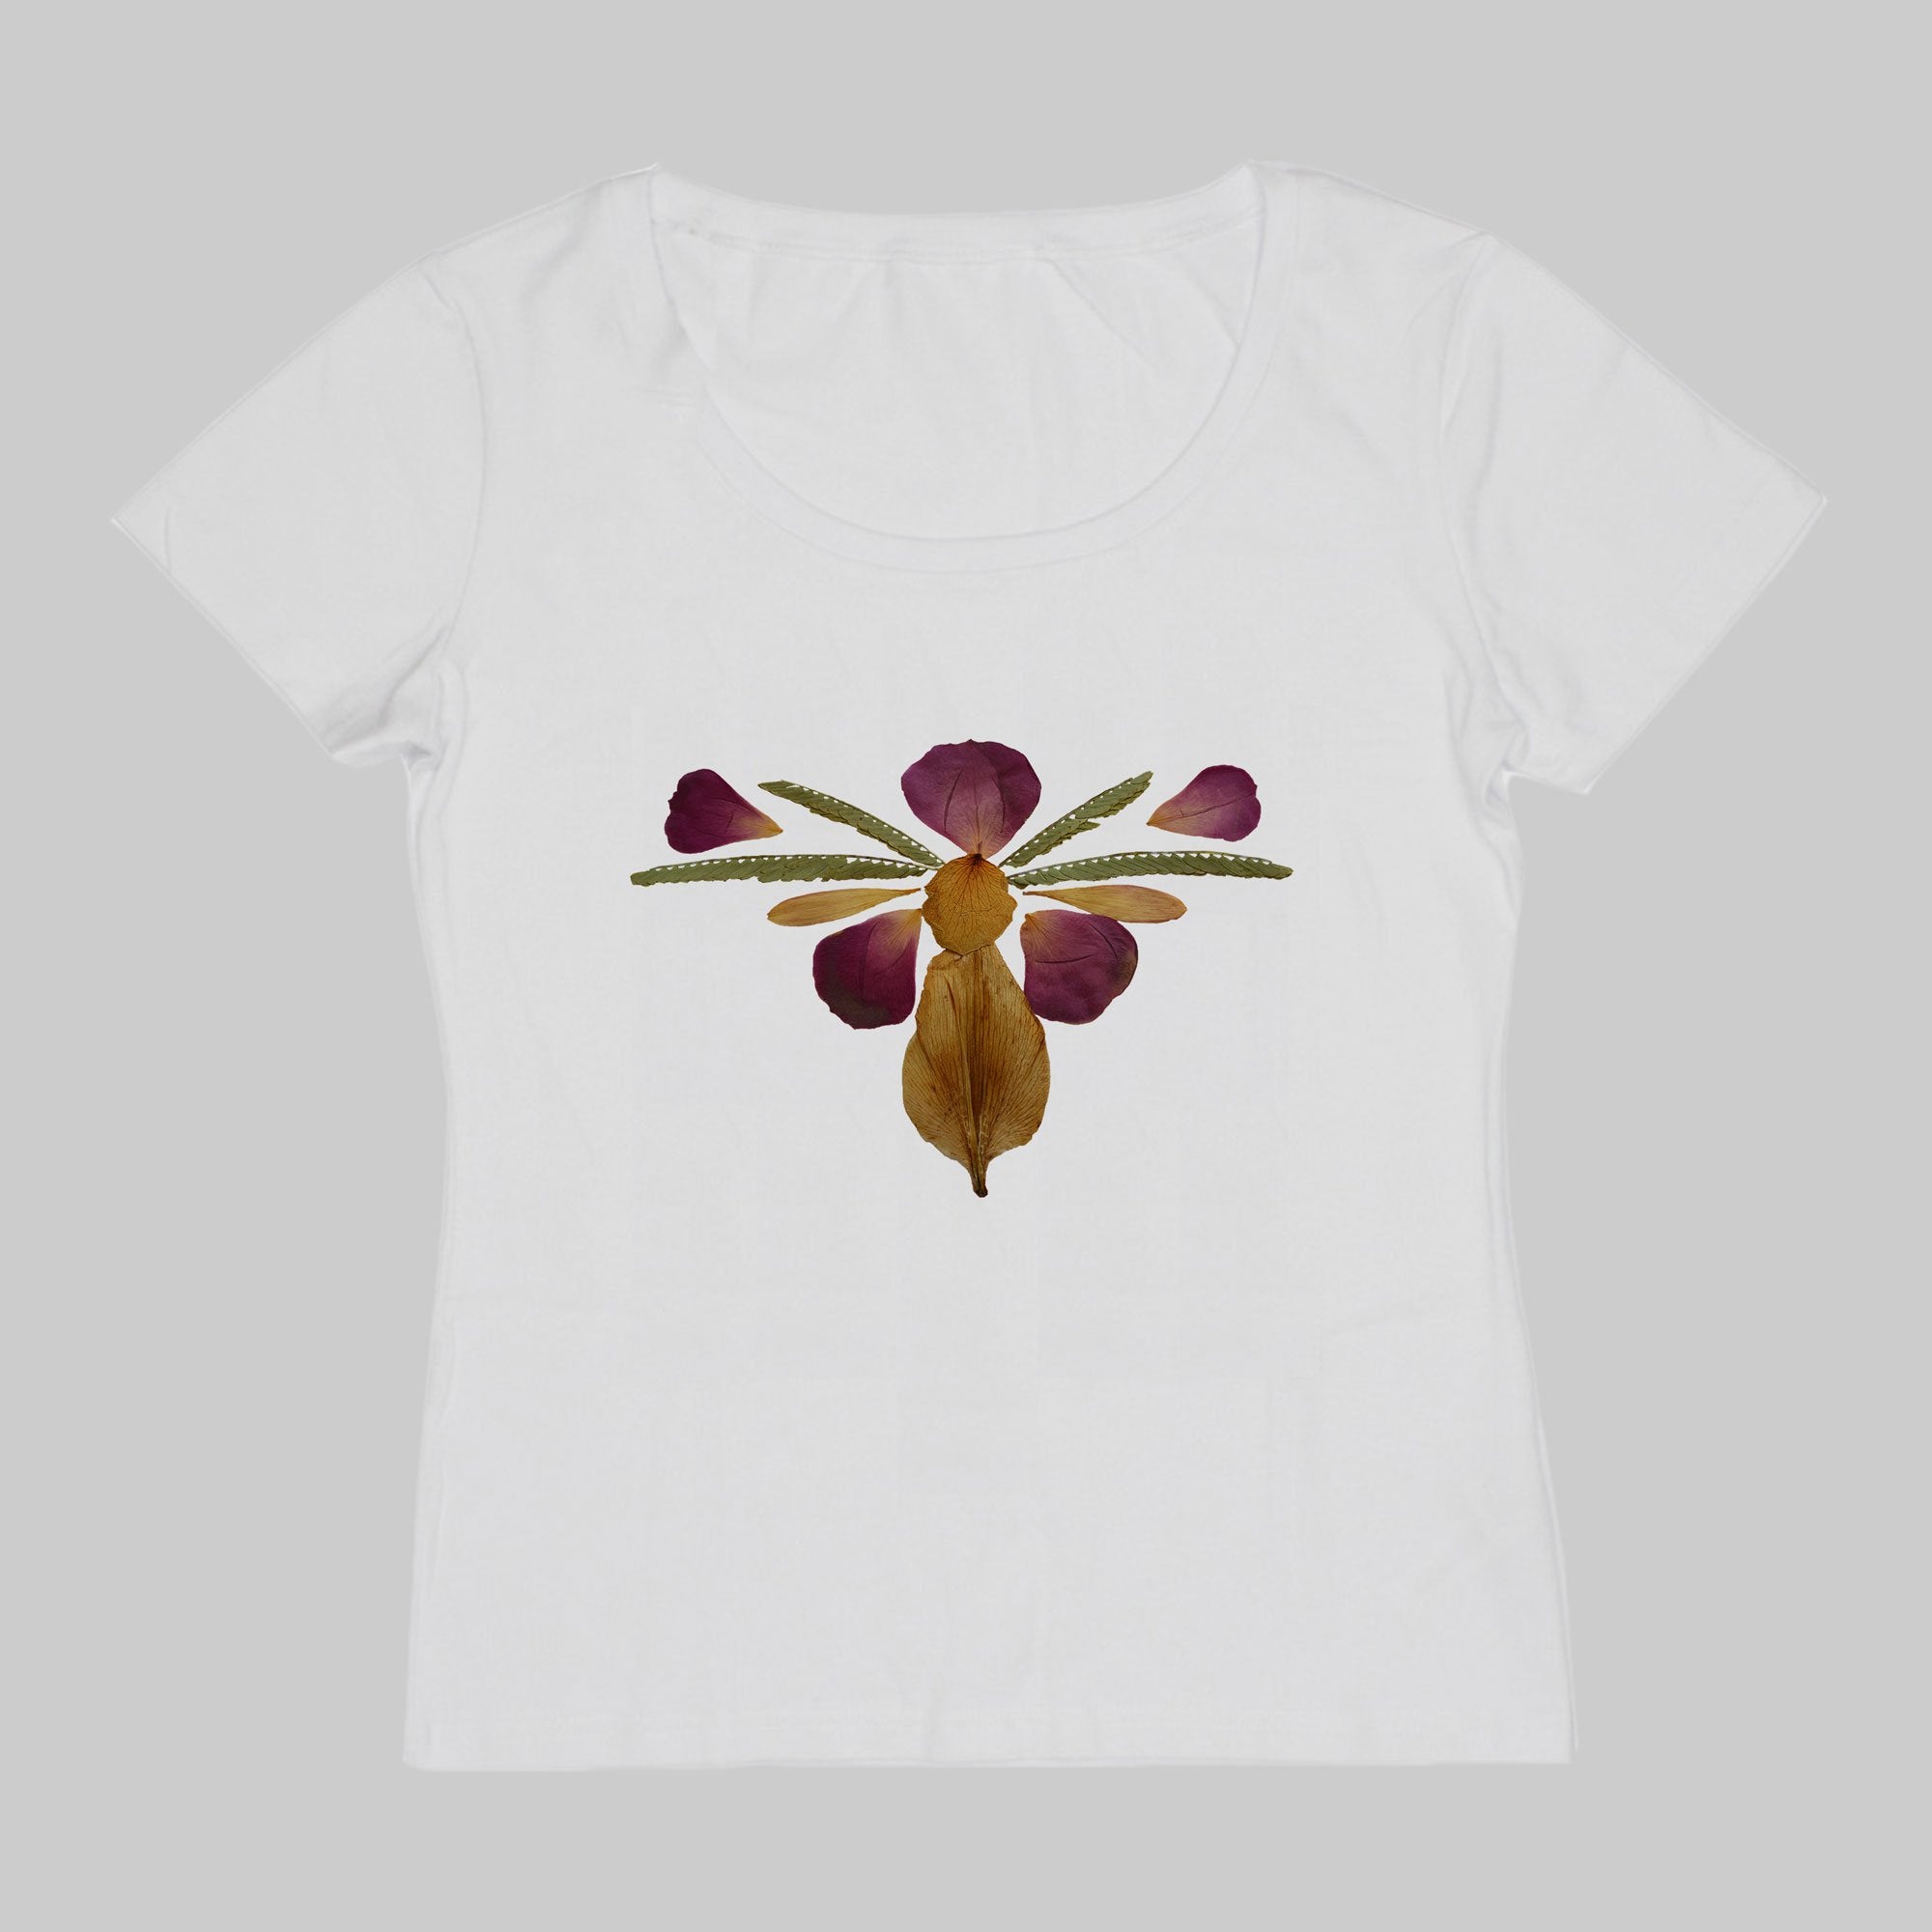 ZARUK Designs Butterfly-Like Ornament T-Shirt (Women's)